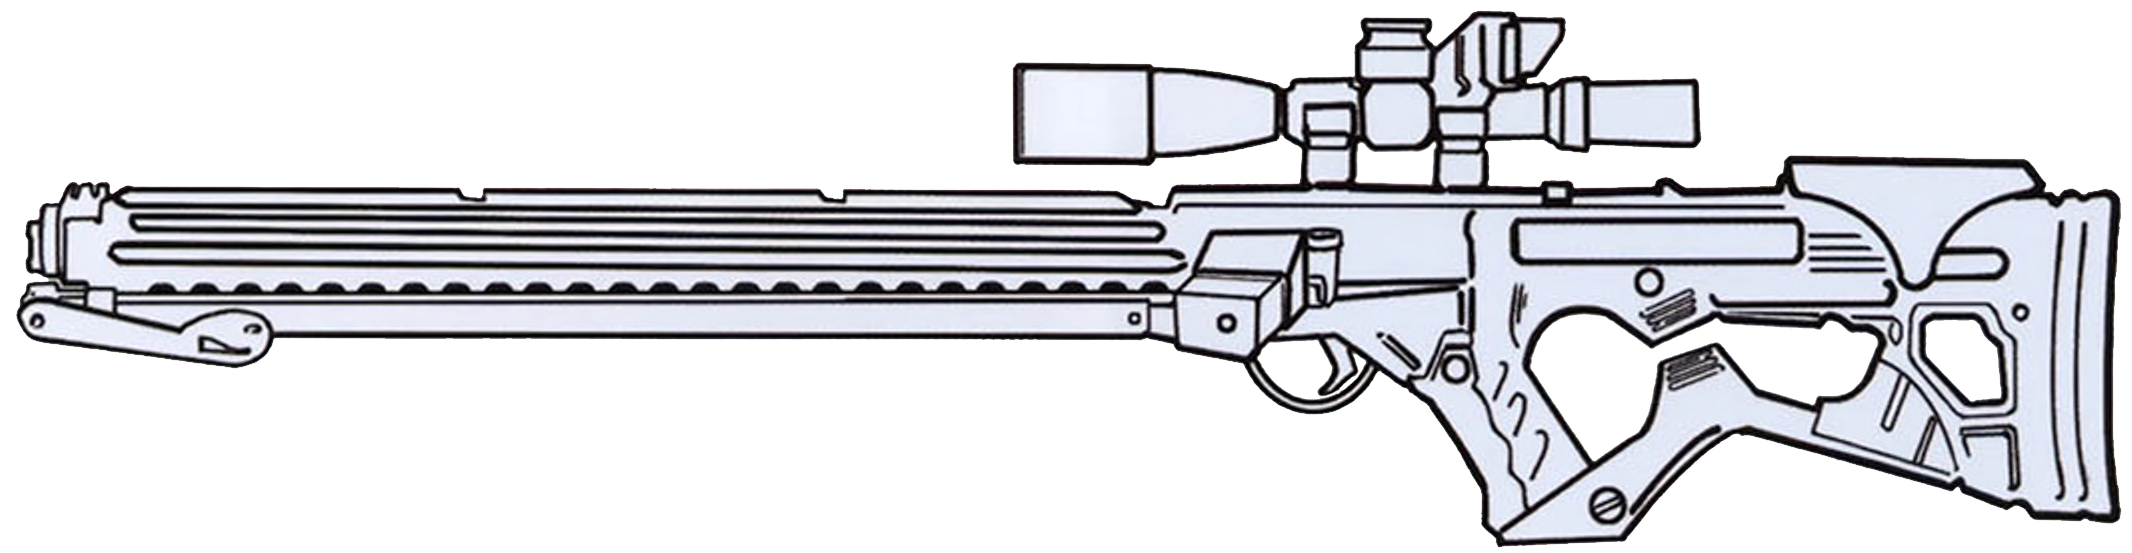 Plik:E11s sniper rifle.png